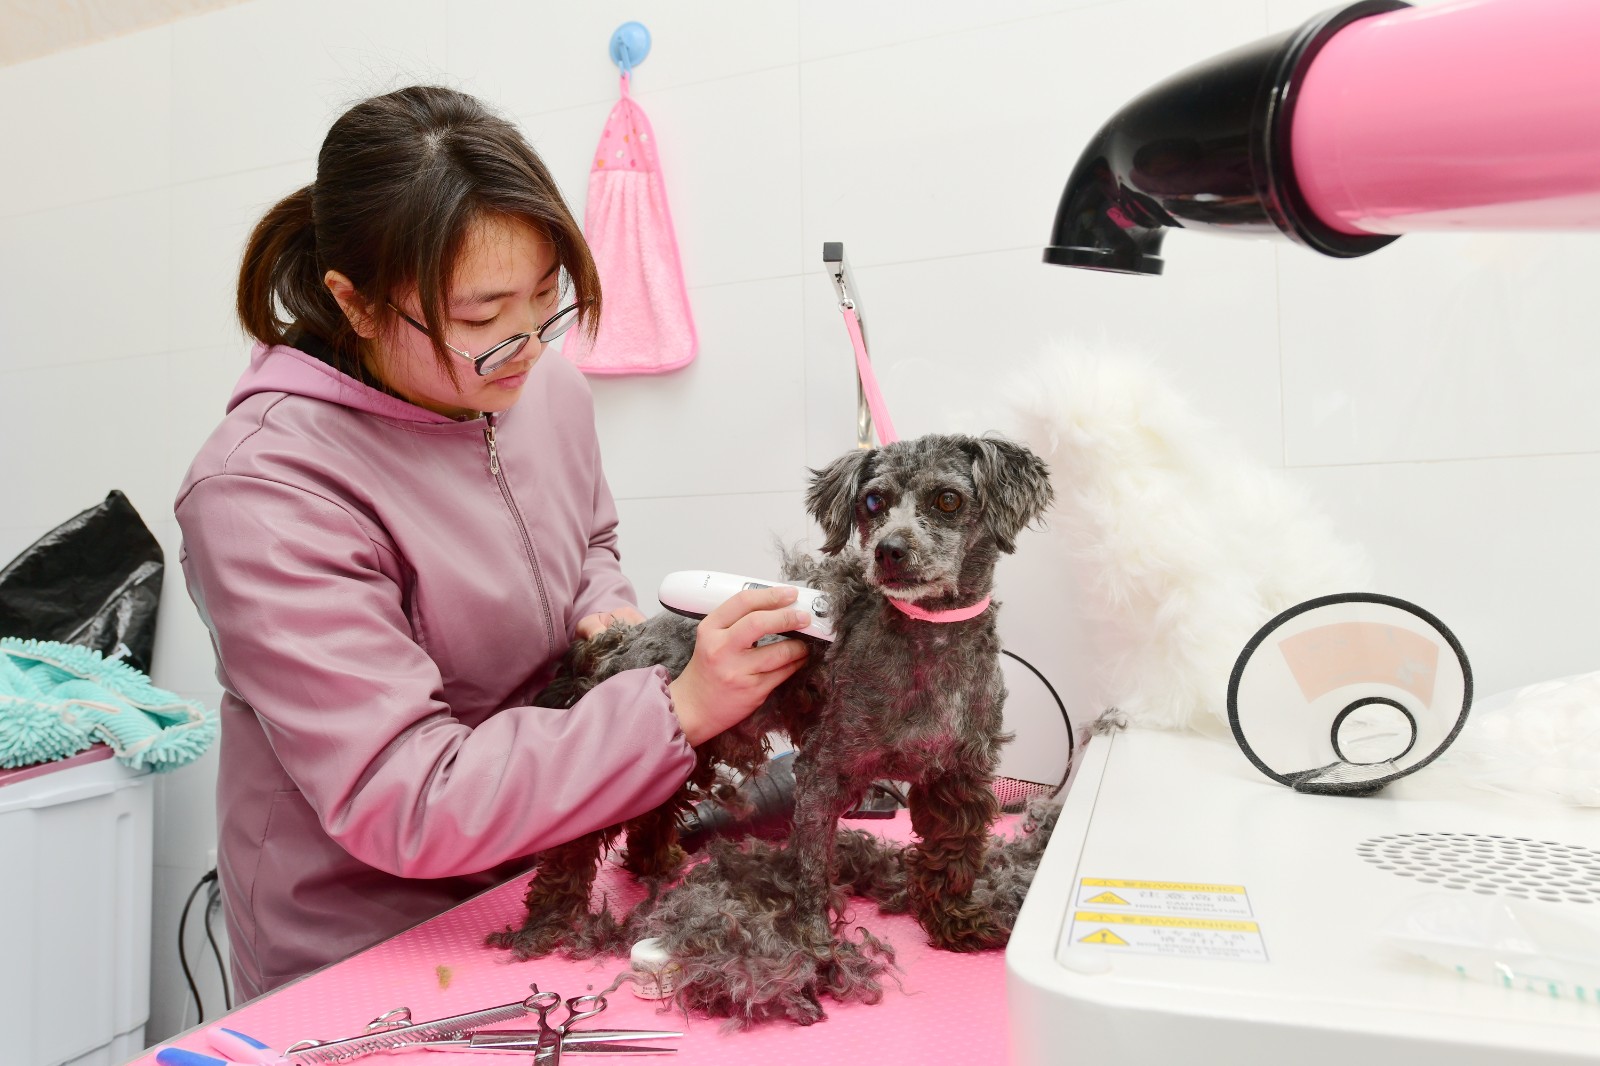 5 陈景平创办的乐然动物医院美容师正在为宠物犬剃毛.JPG